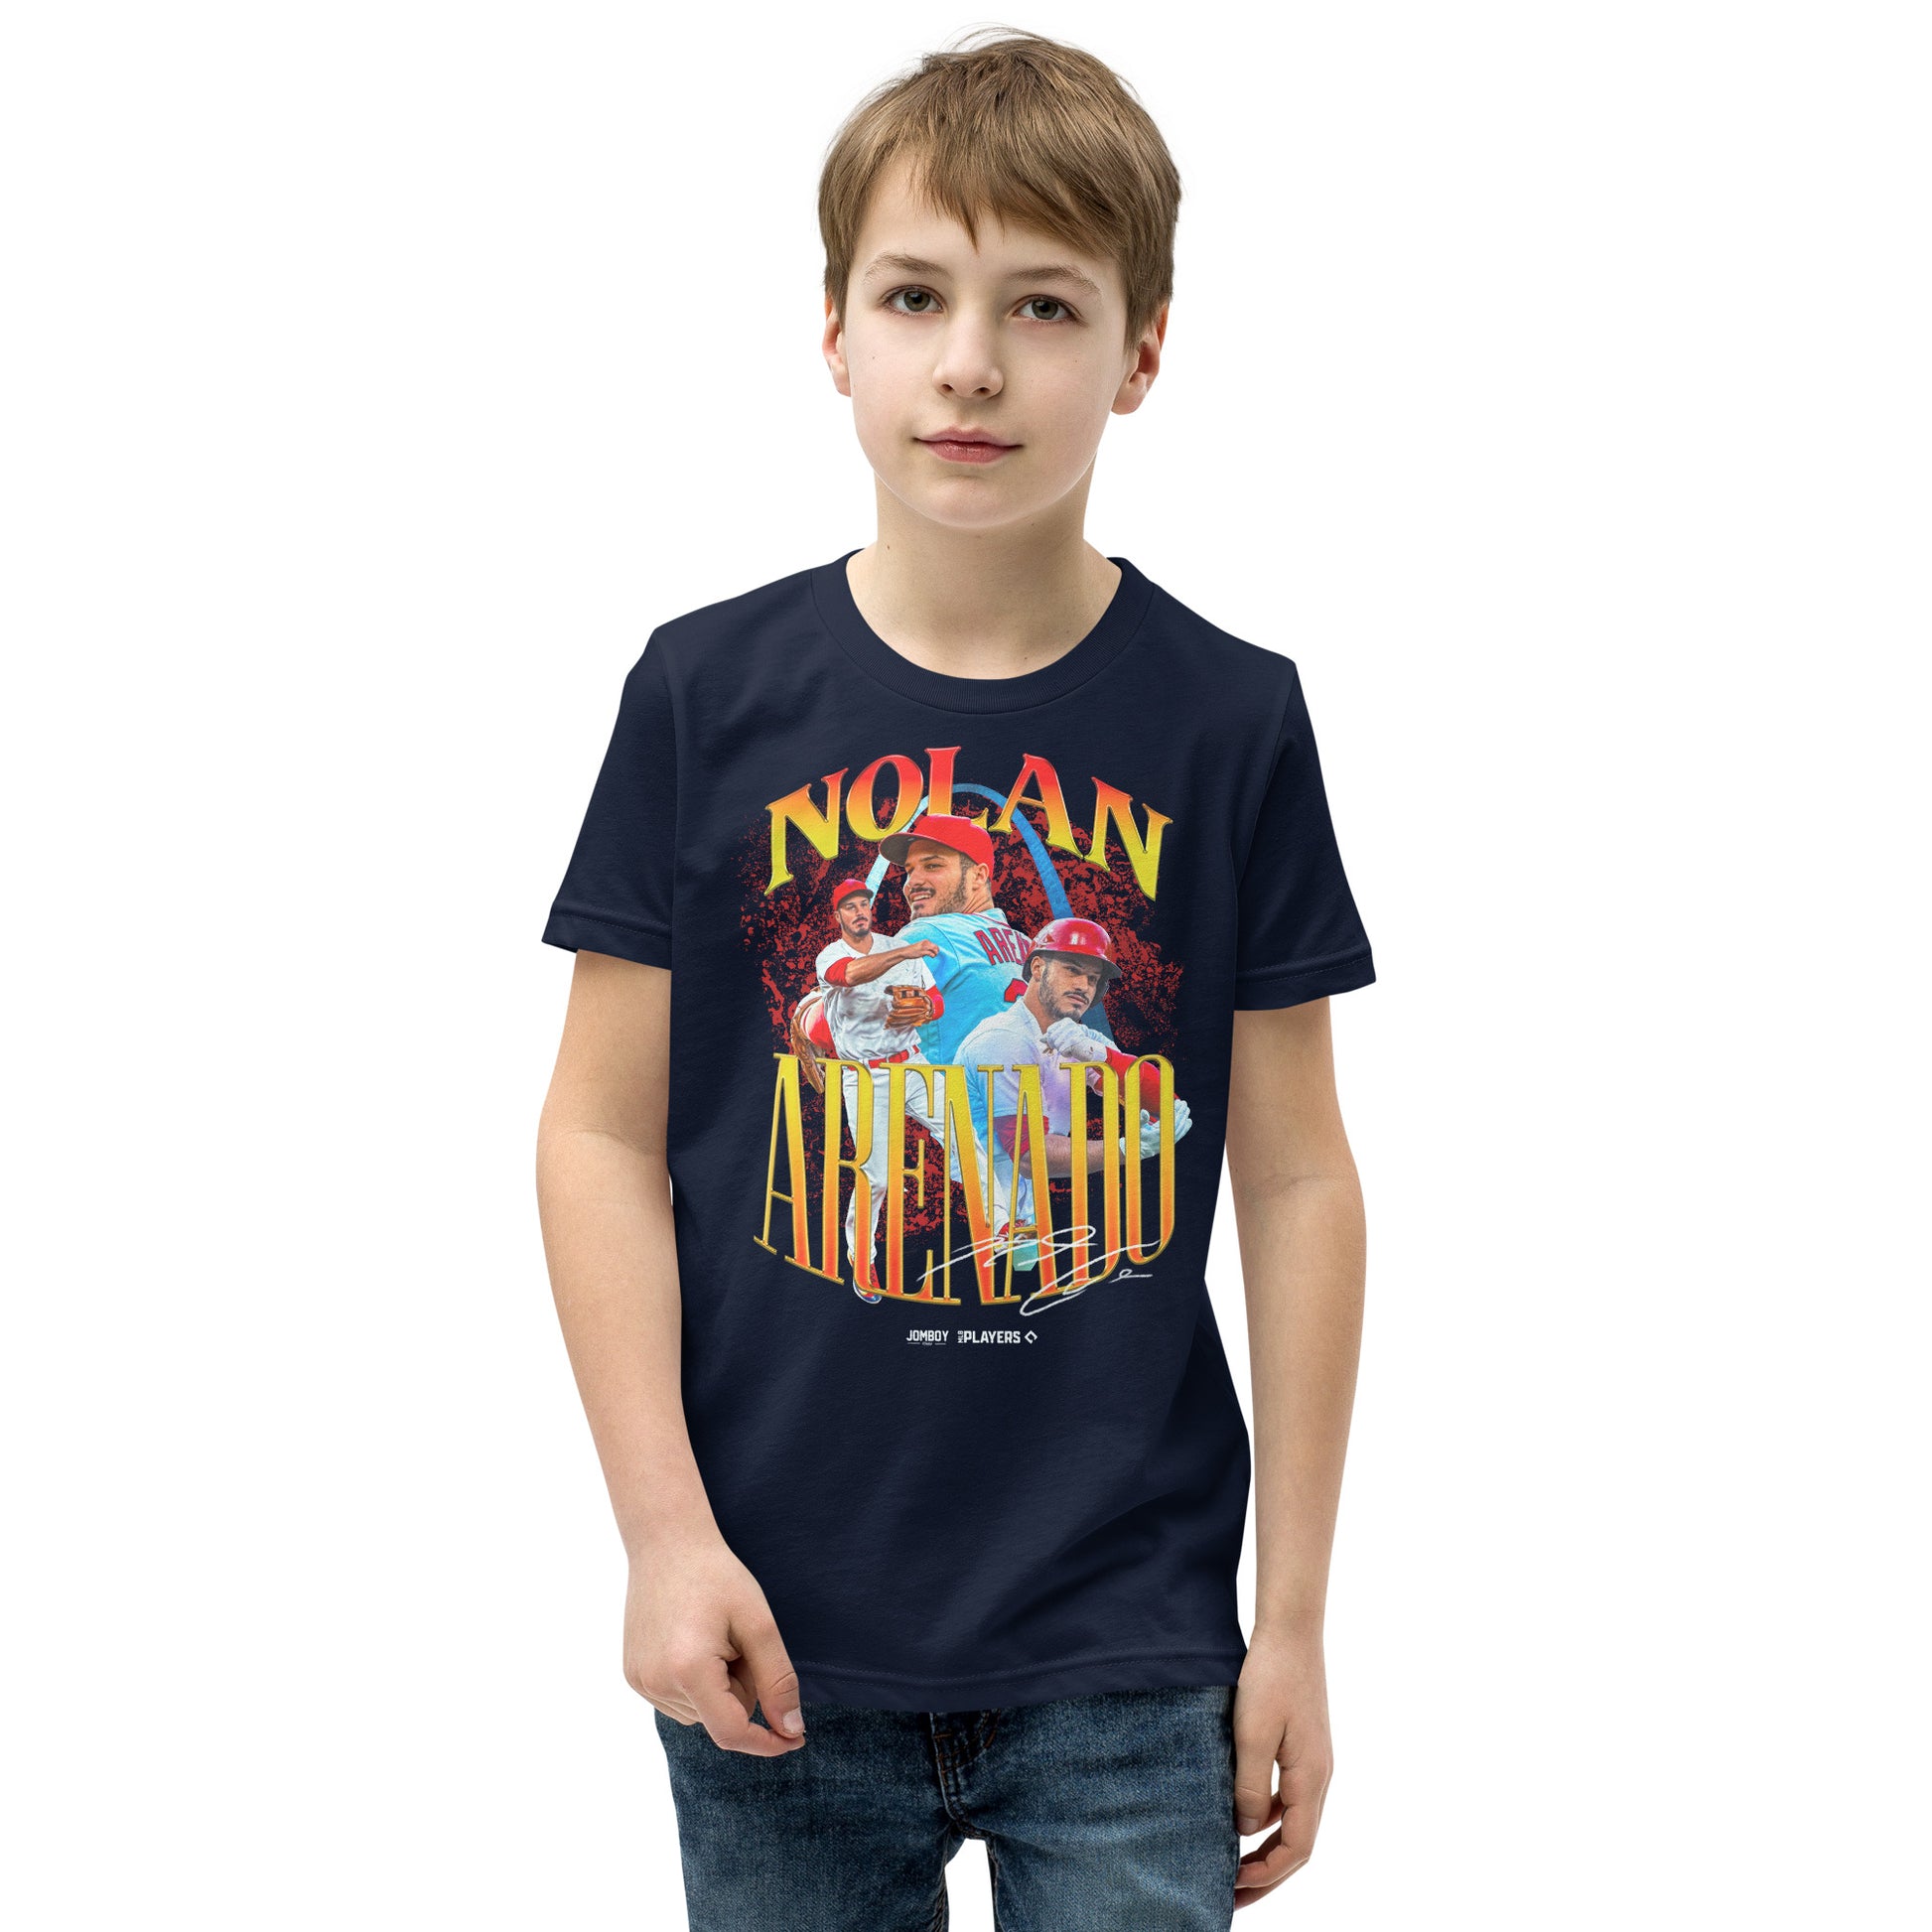 Nolan Arenado Signature Series  Youth T-Shirt – Jomboy Media